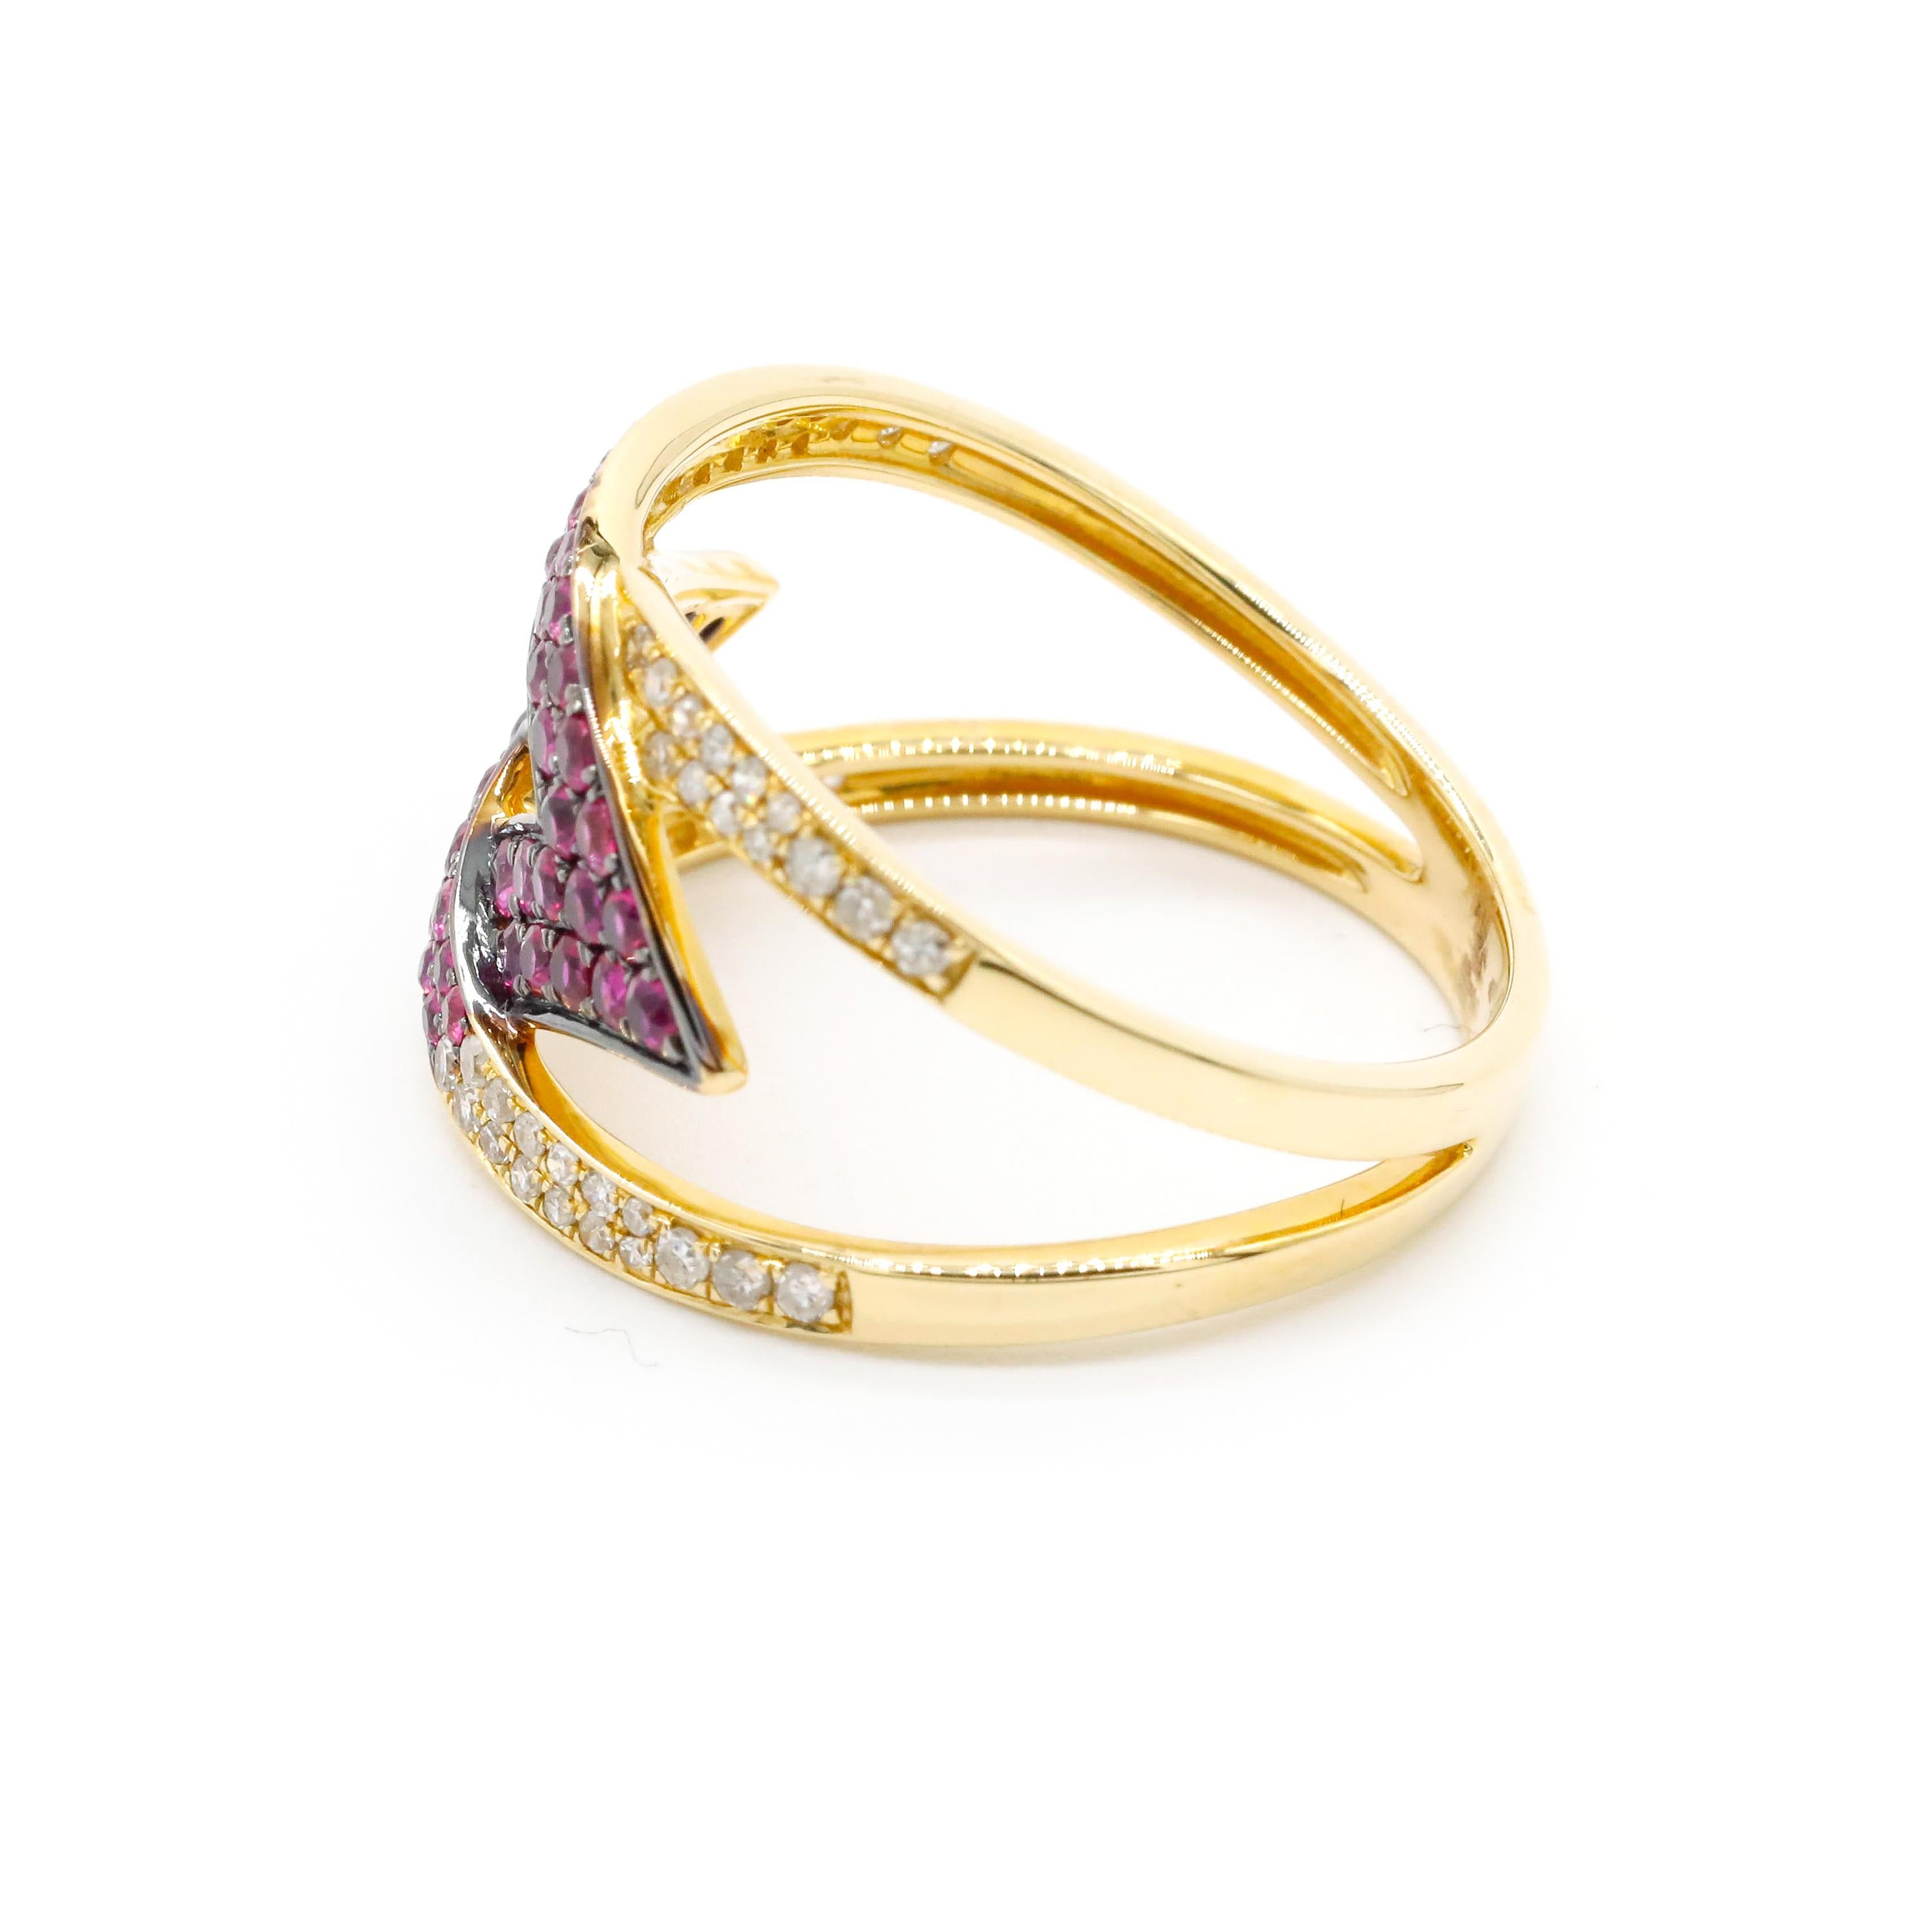 0,25 Karat Rundschliff Diamant 0,62 Karat Rubin Pave 14k Gelbgold Wrap Ring 

Ob als Ehering oder als Jubiläumsring - dieser Ring ist einfach perfekt. Mit einer einzigen Reihe von 0,62 Karat natürlichen Rubinen, gefasst in einer Pave-Fassung. Auf